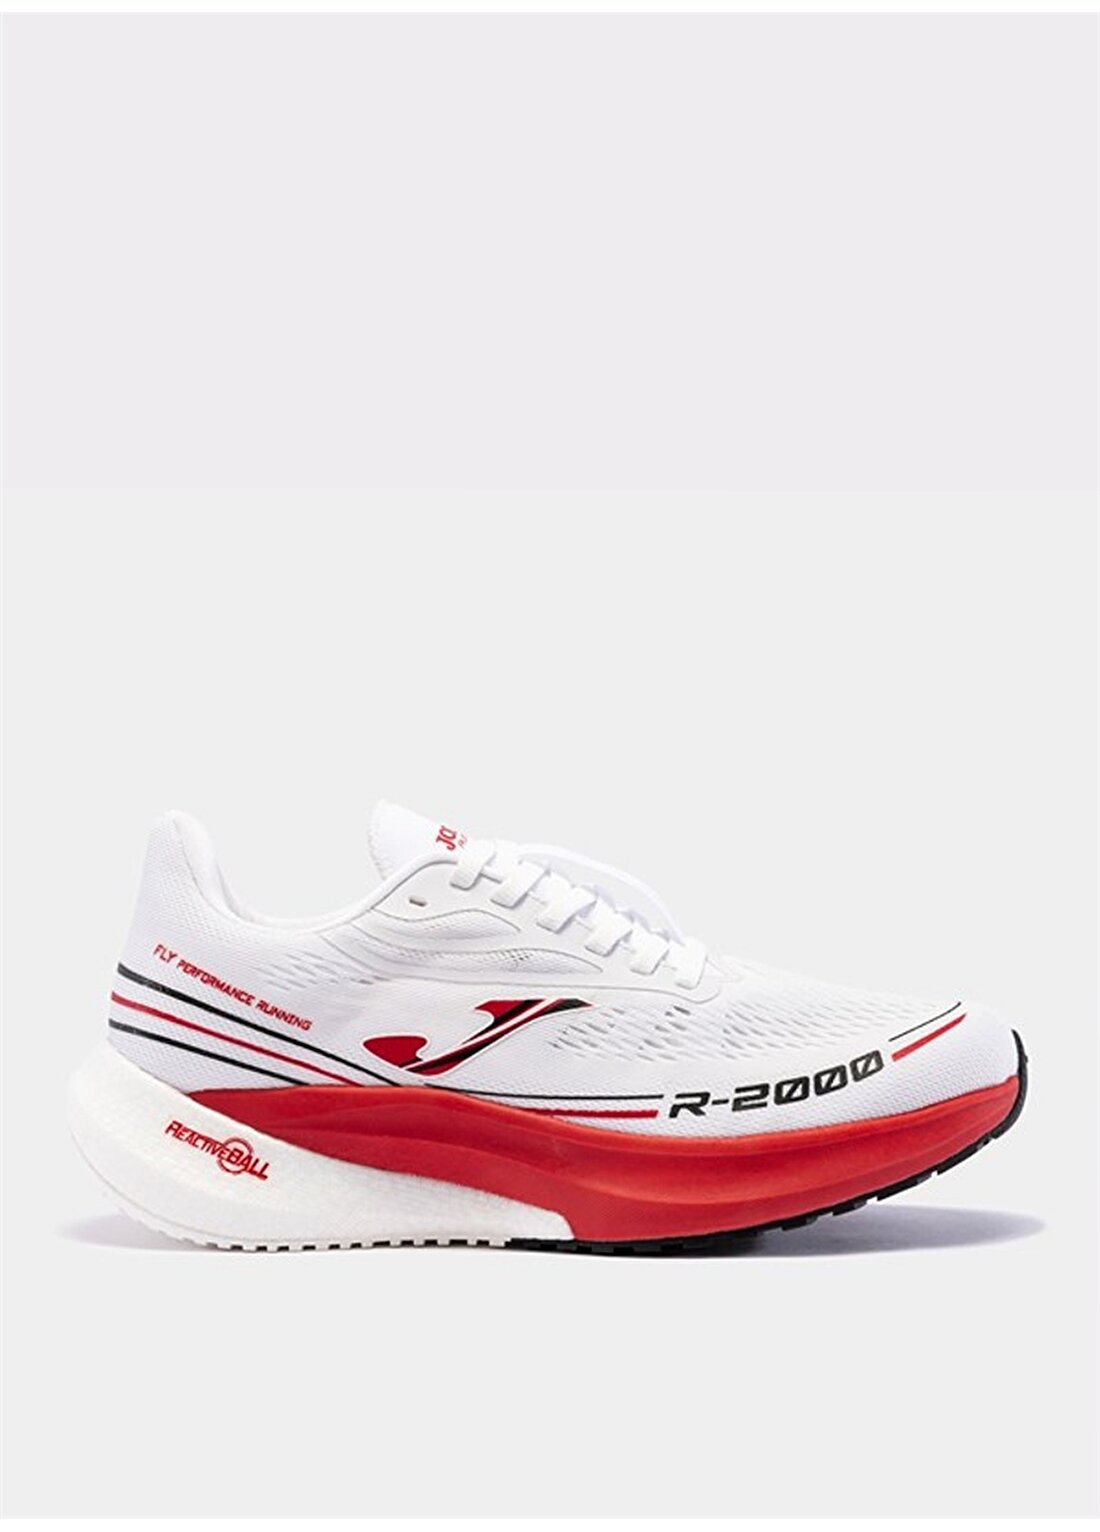 Joma Beyaz Erkek Koşu Ayakkabısı RR200S2402 R.2000 2402 BLANCO RO